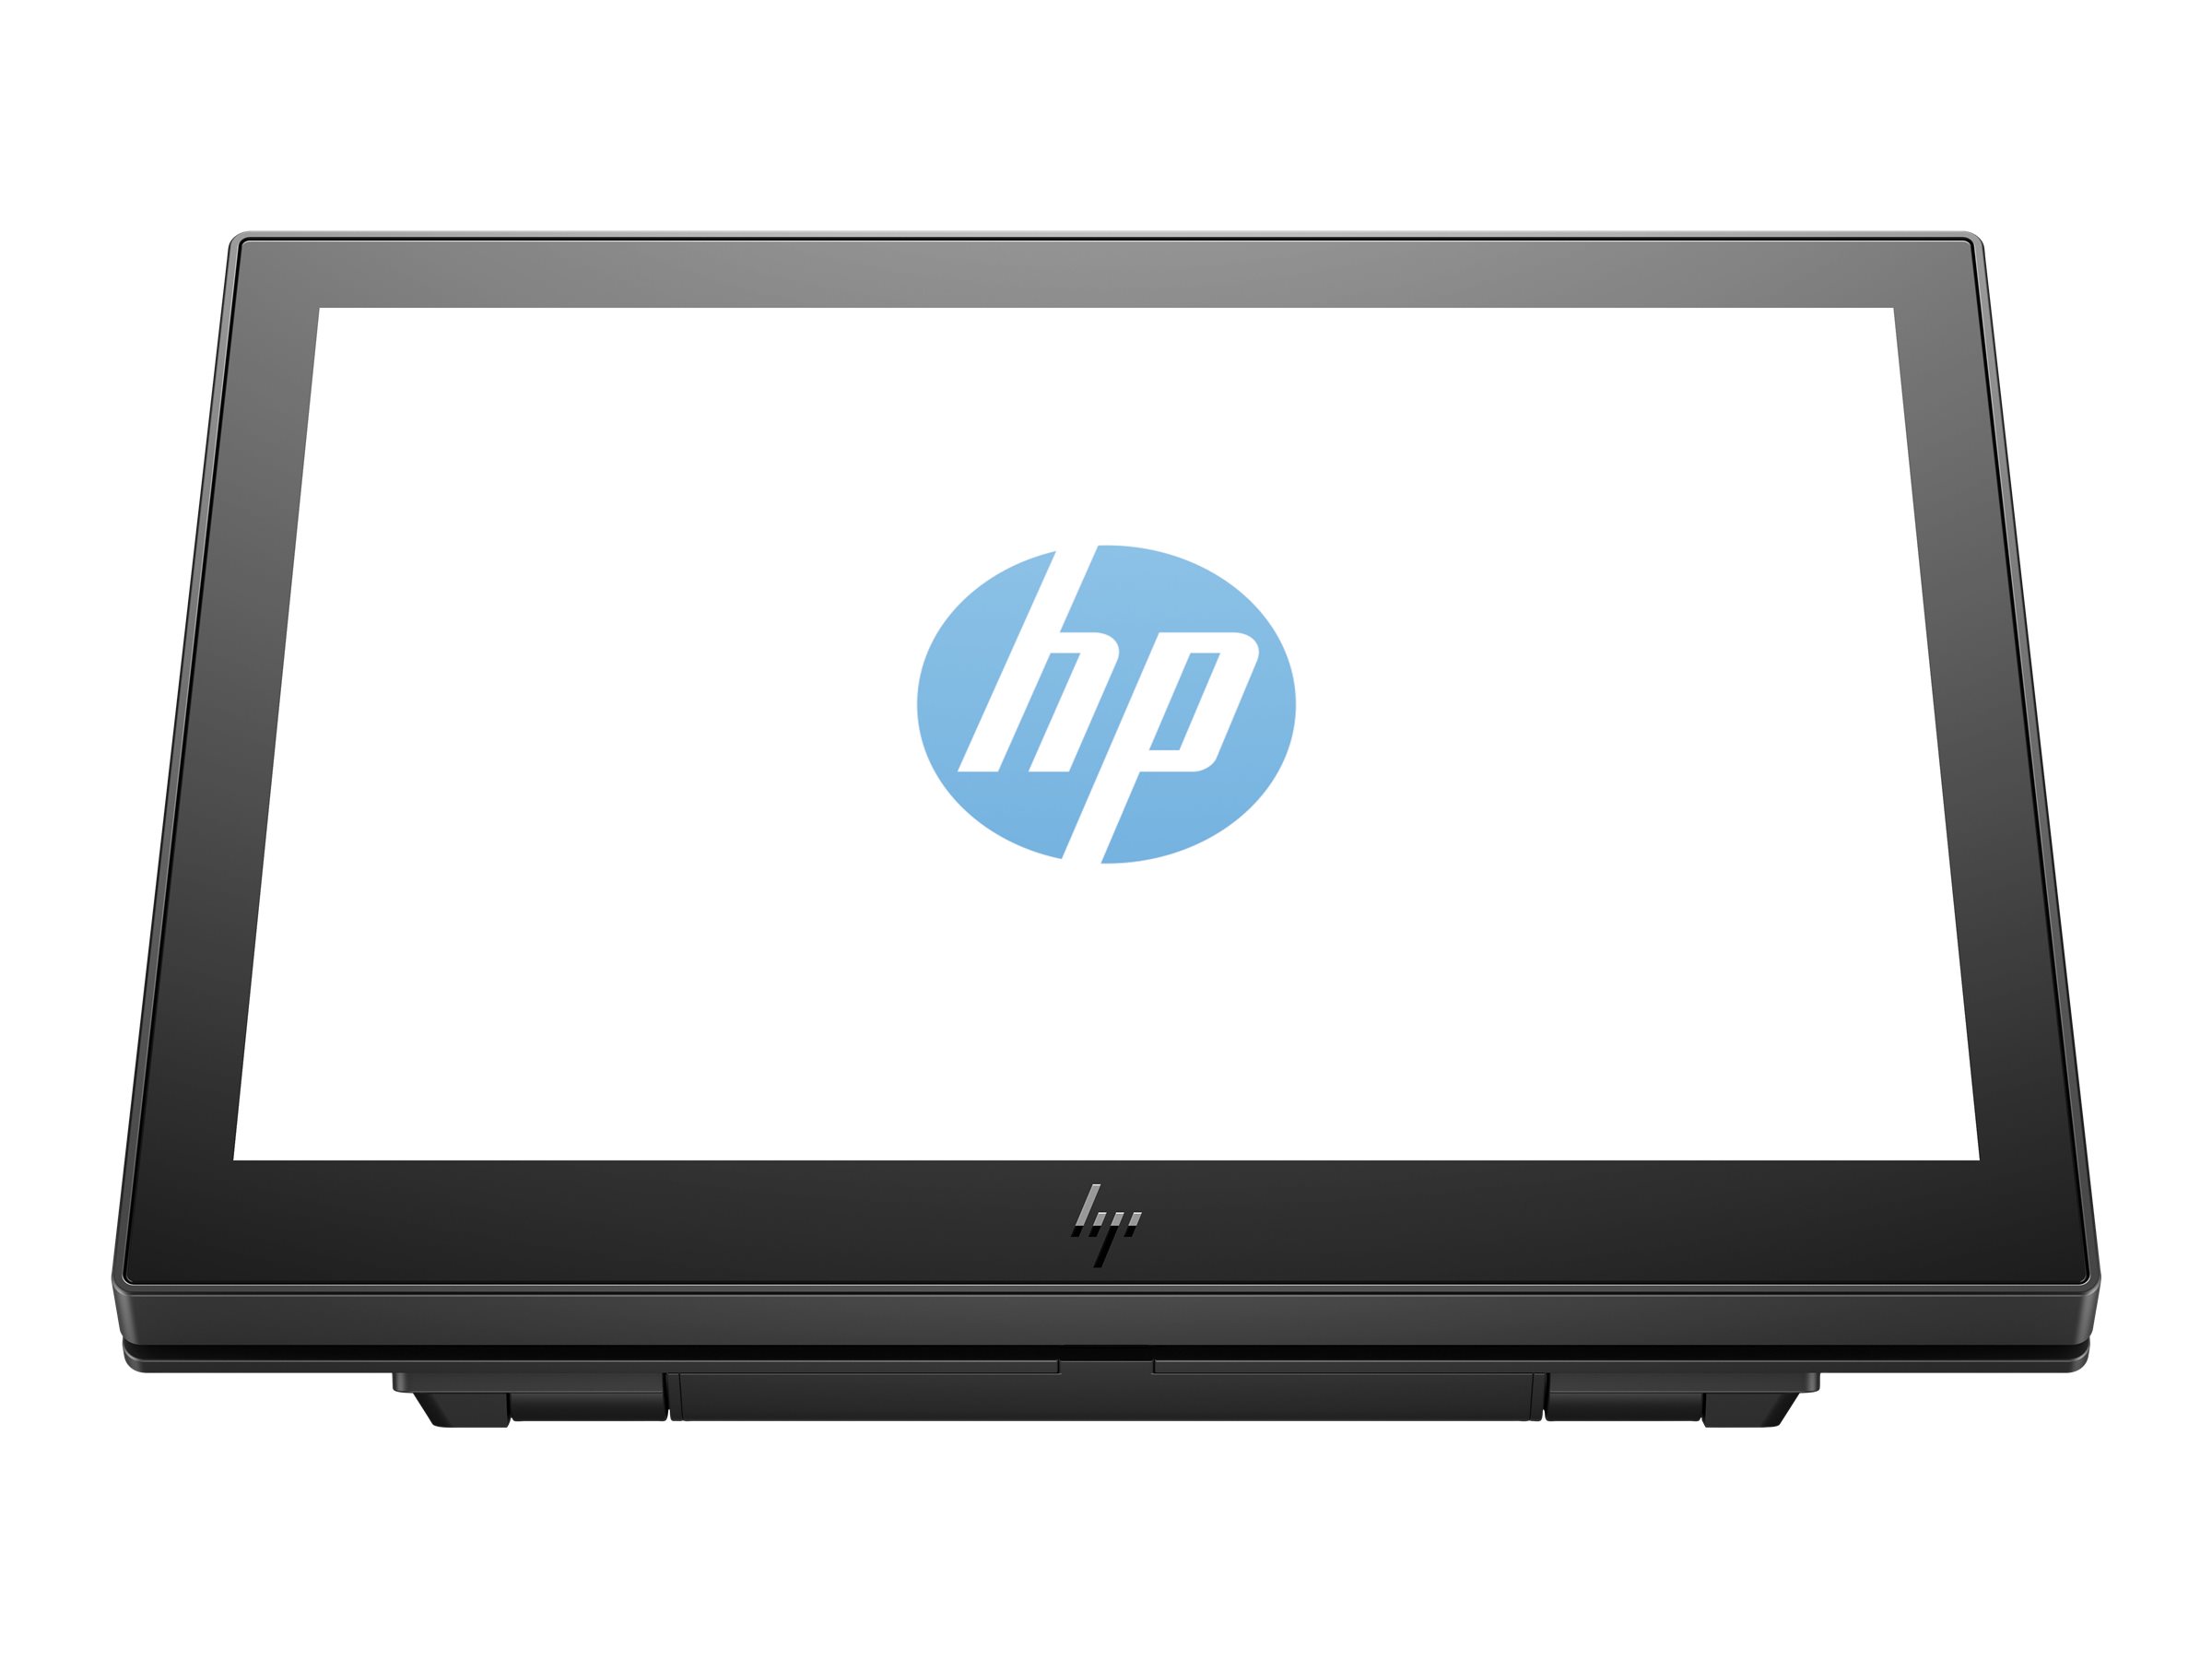 HP Engage One 10t - Affichage client - 10.1" - écran tactile - 1280 x 800 @ 60 Hz - IPS - 25 ms - pour EliteBook 745 G5, 830 G5, 830 G6, 840 G5, 840 G6; Portable Essential, Pro; ZBook Studio G4 - 1XD81AA - Écrans pour point de vente